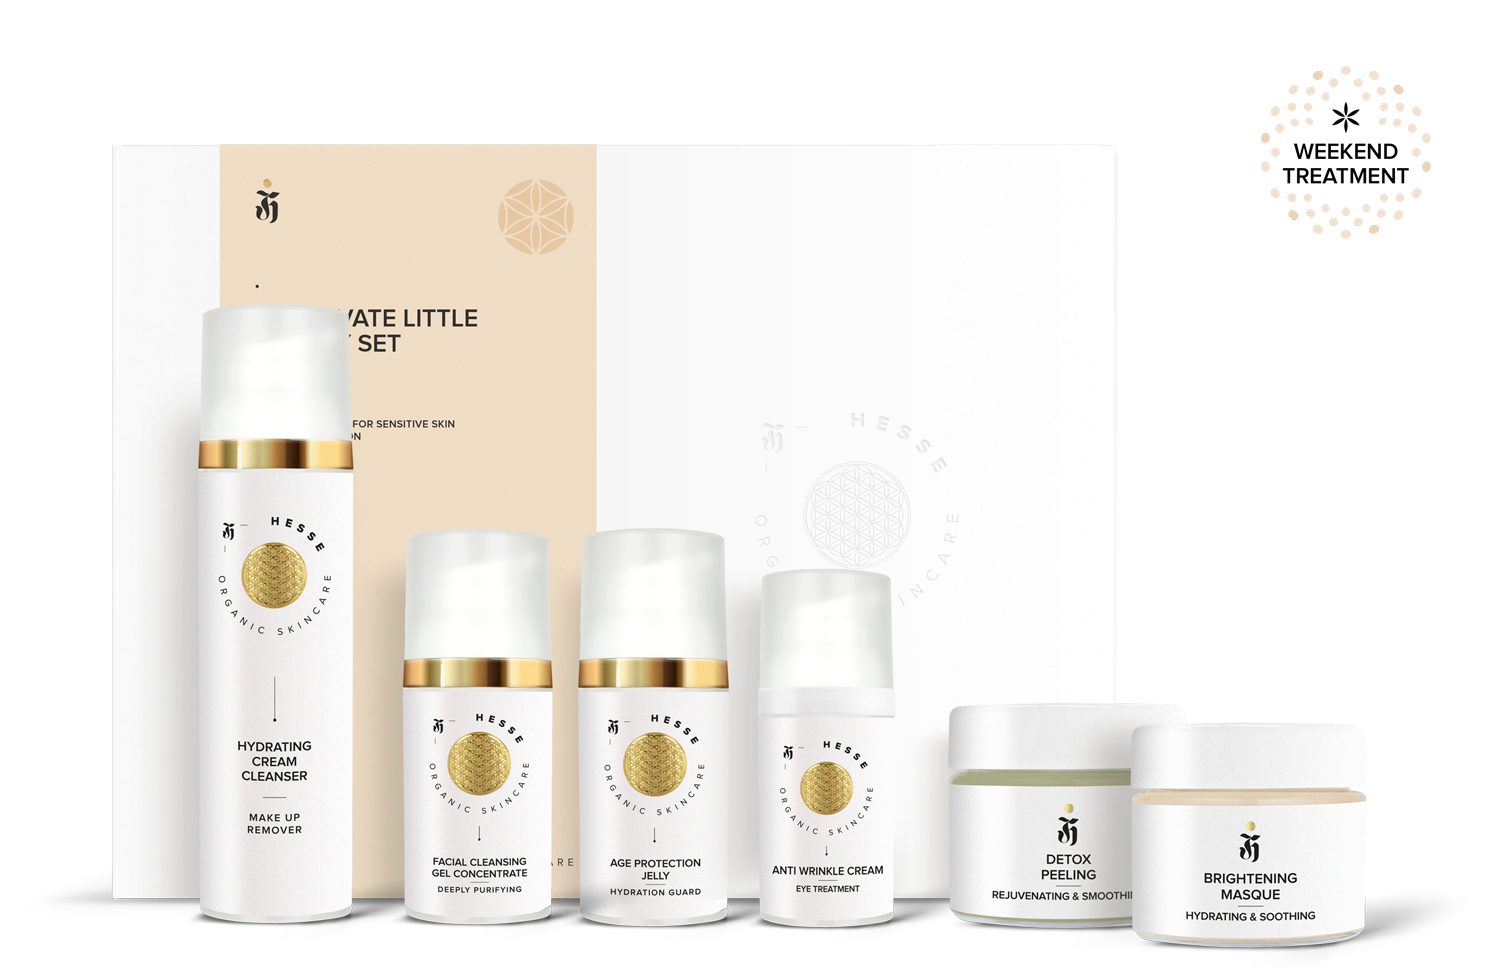 Hesse Organic Skincare Gesichtspflege-Set TREATMENT mit WEEKEND SET Produkten 6